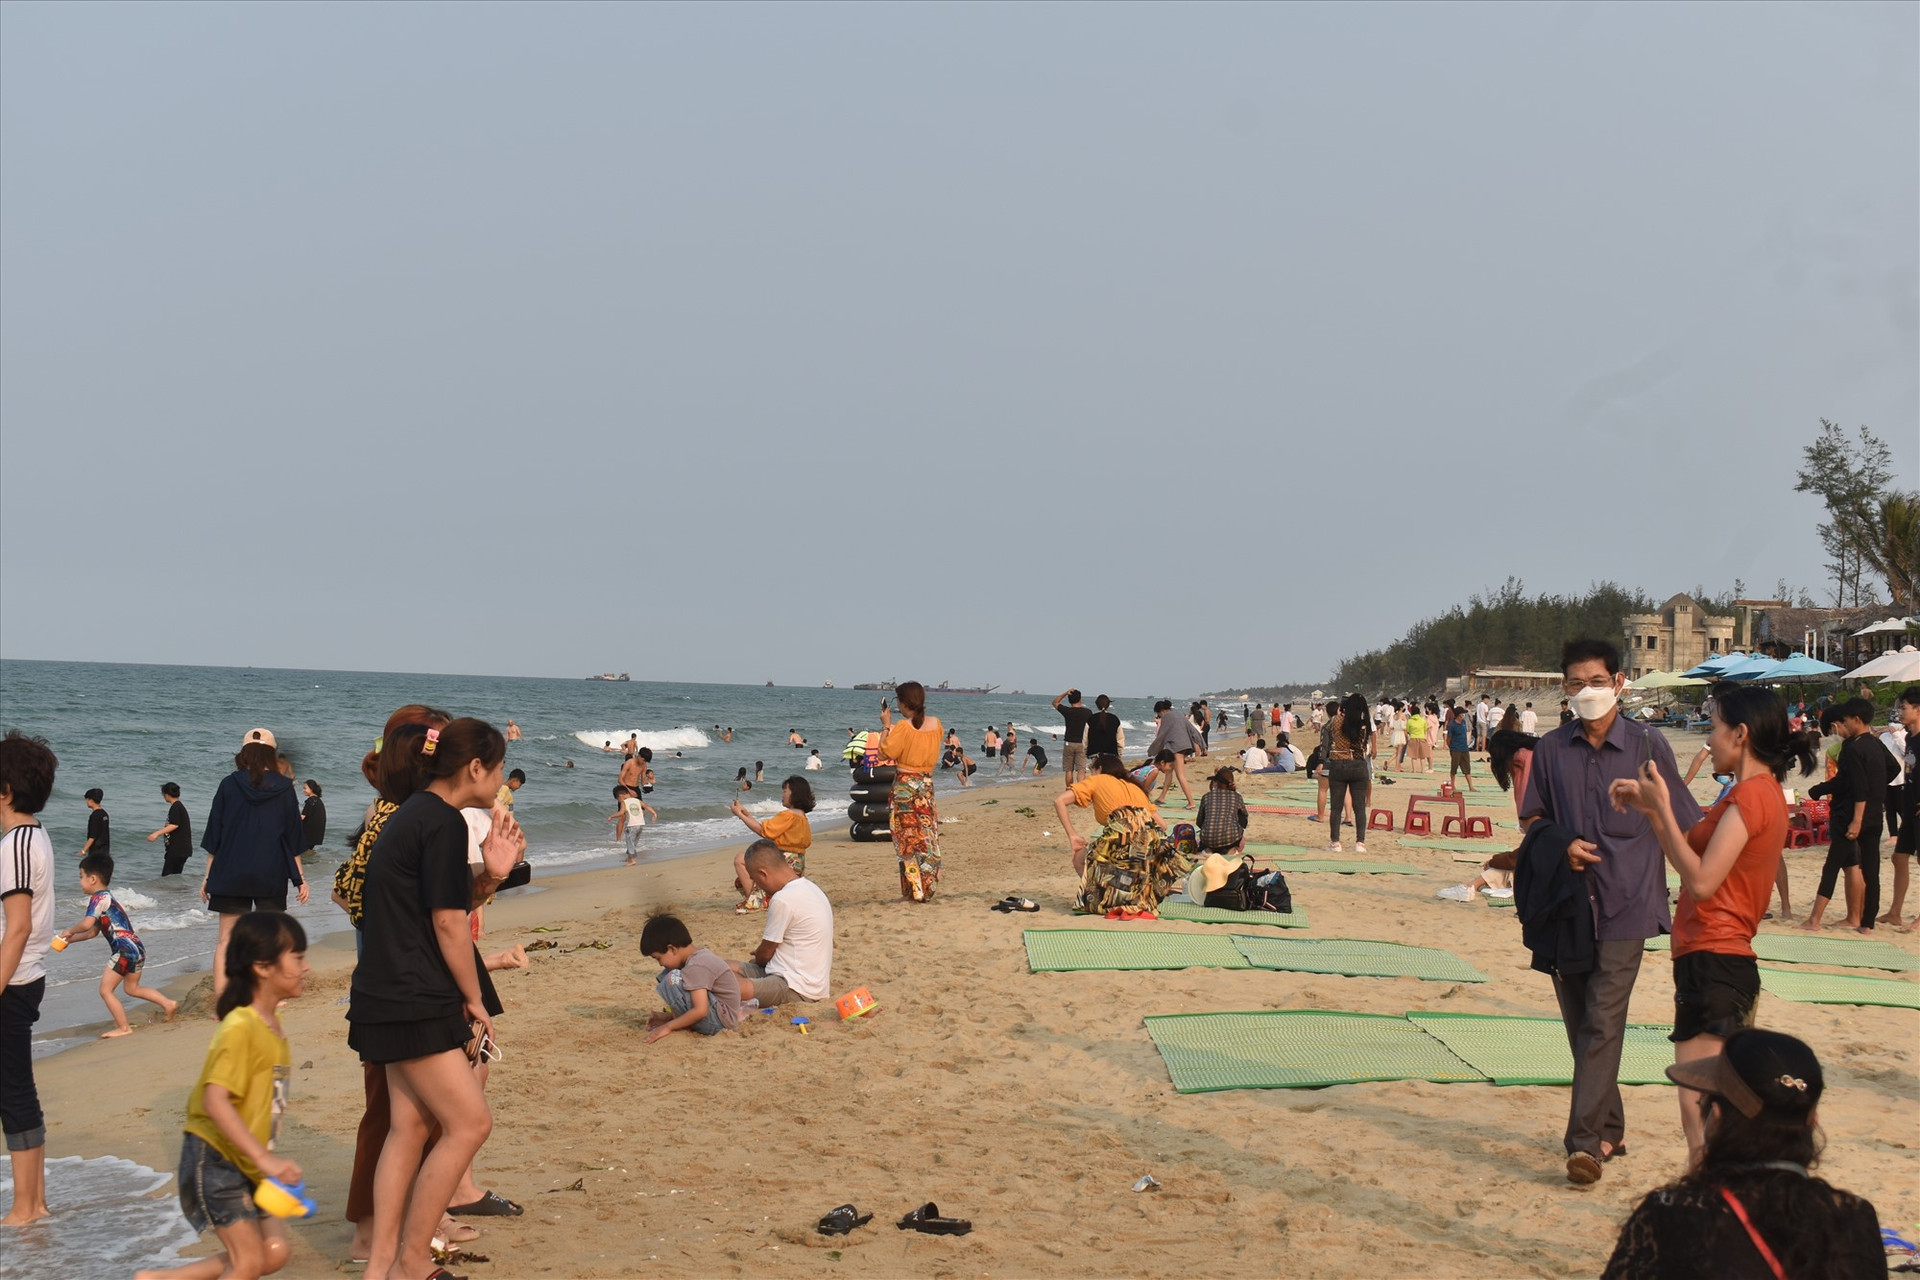 Mỗi ngày có hàng nghìn lượt du khách đến biển An Bàng để vui chơi, giải trí và tắm biển. Ảnh: N.Q